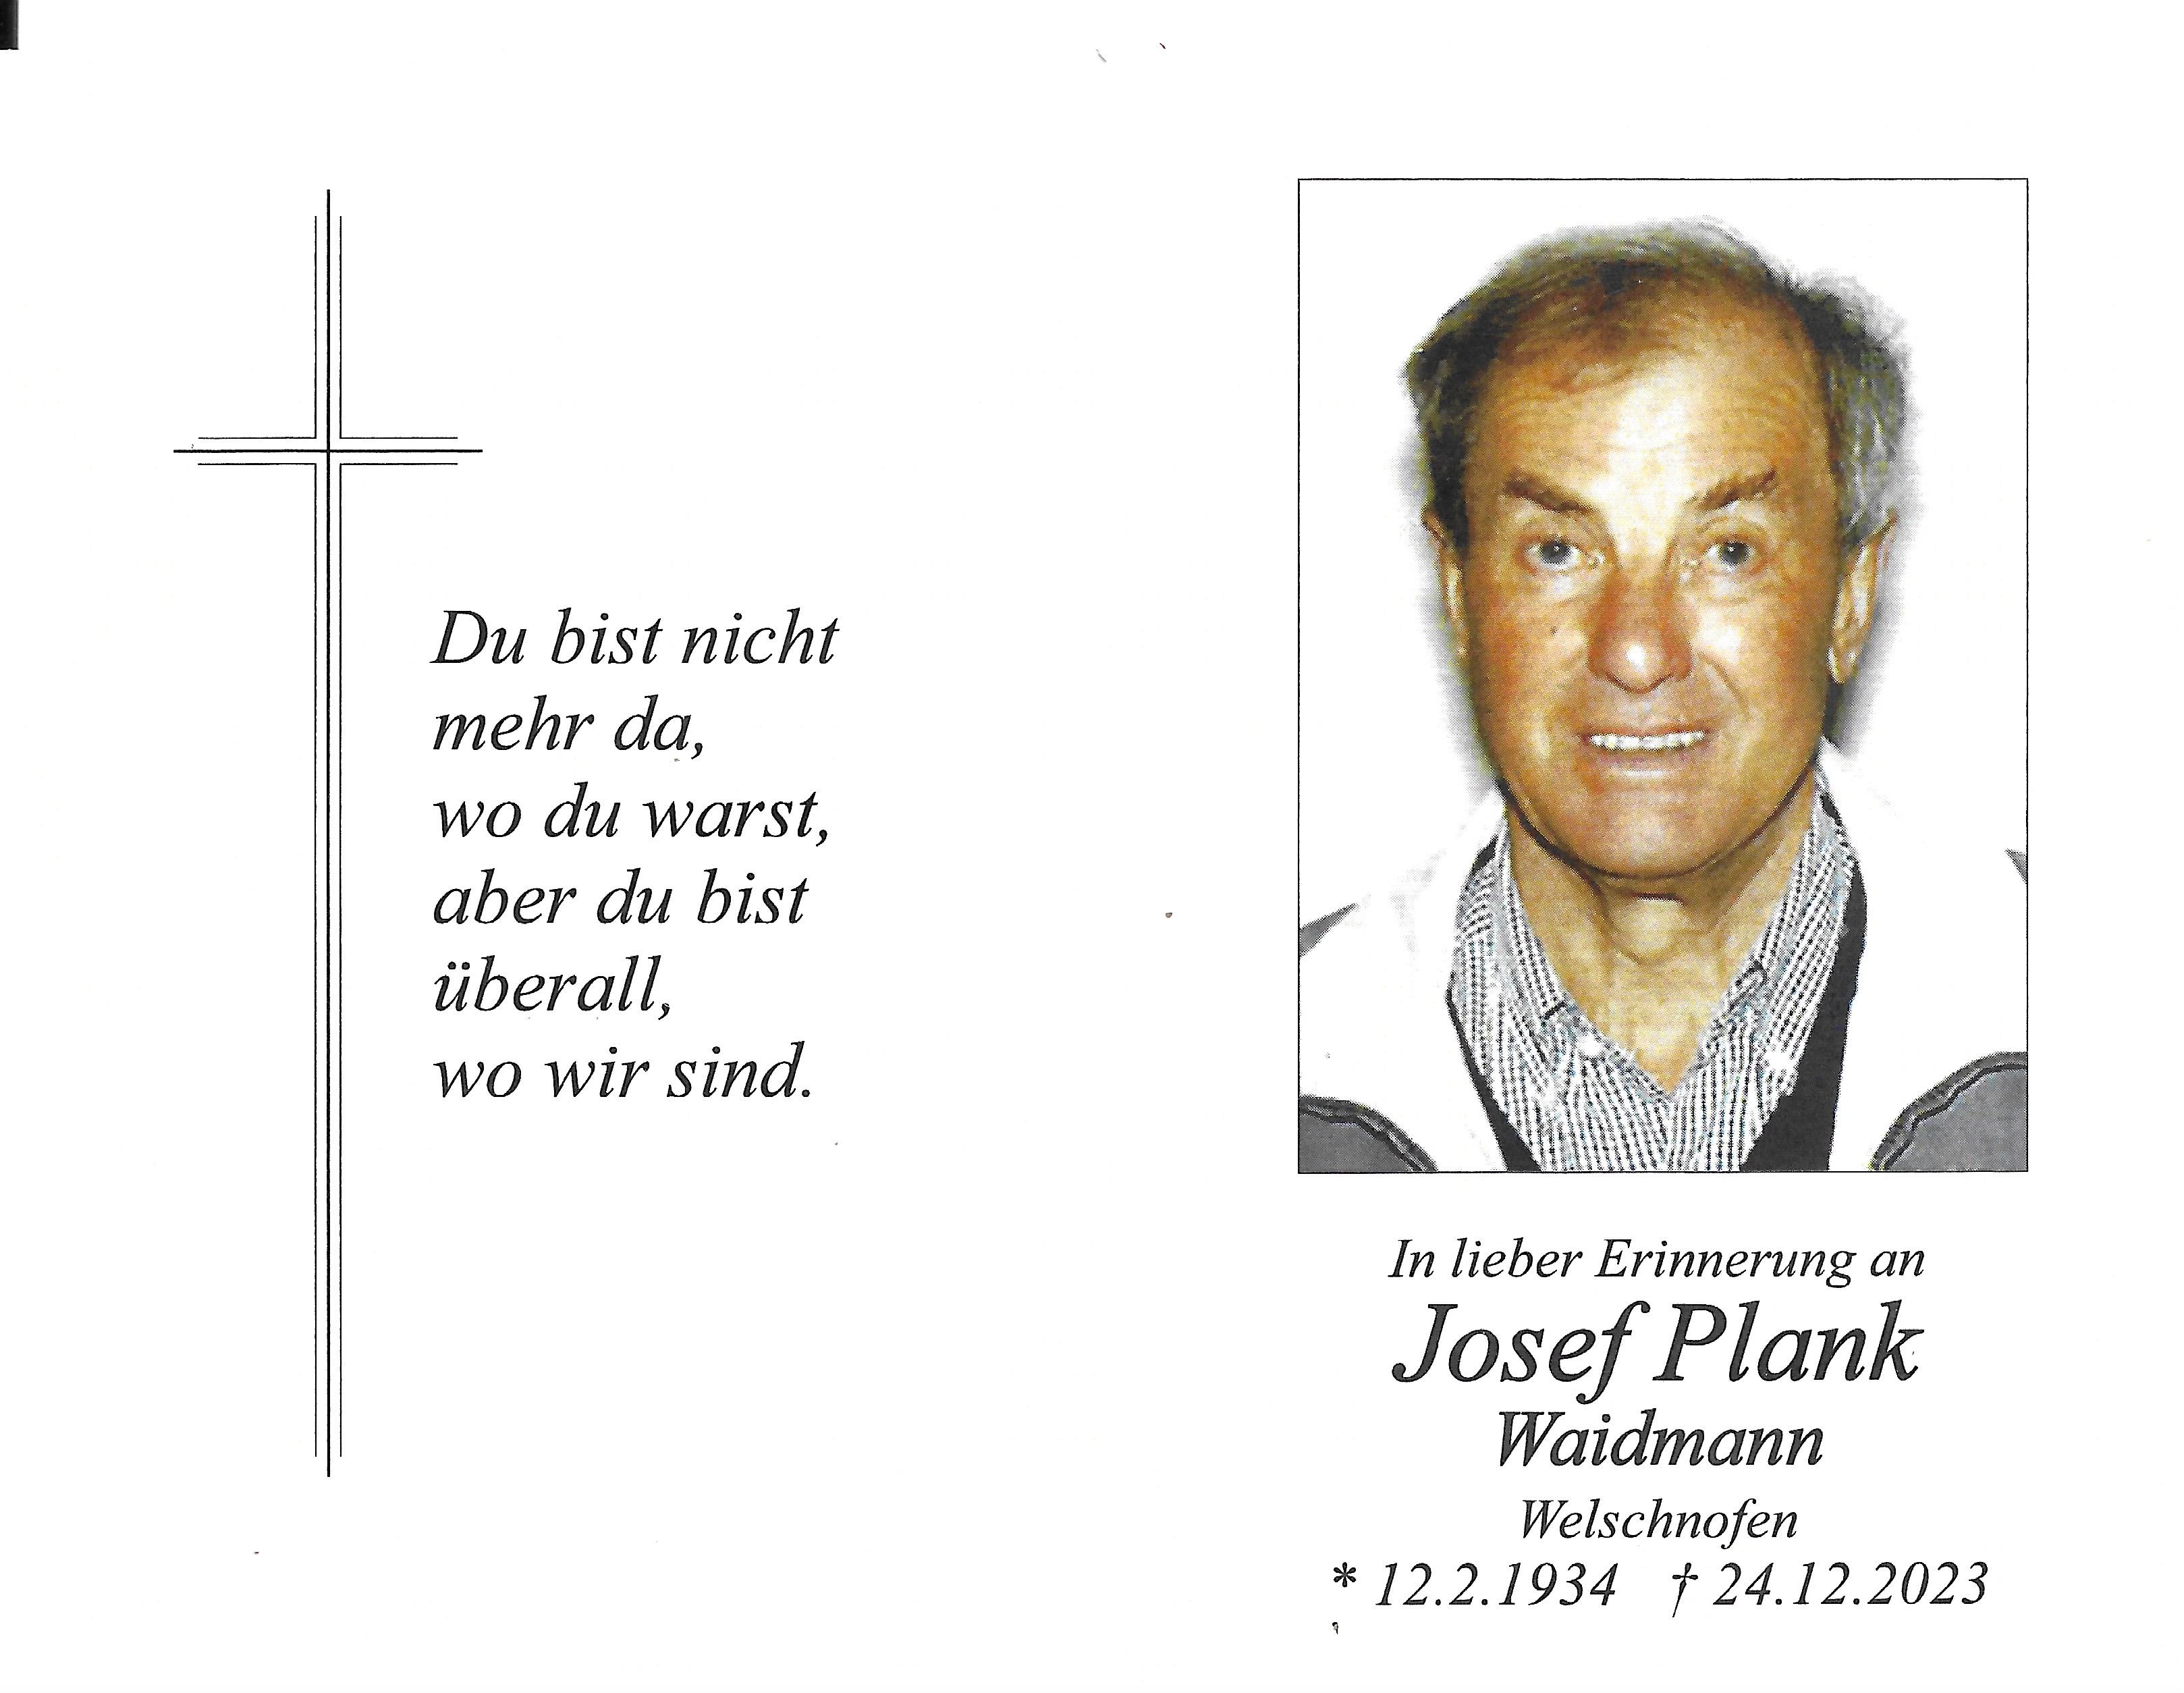 Josef Plank Waidmann